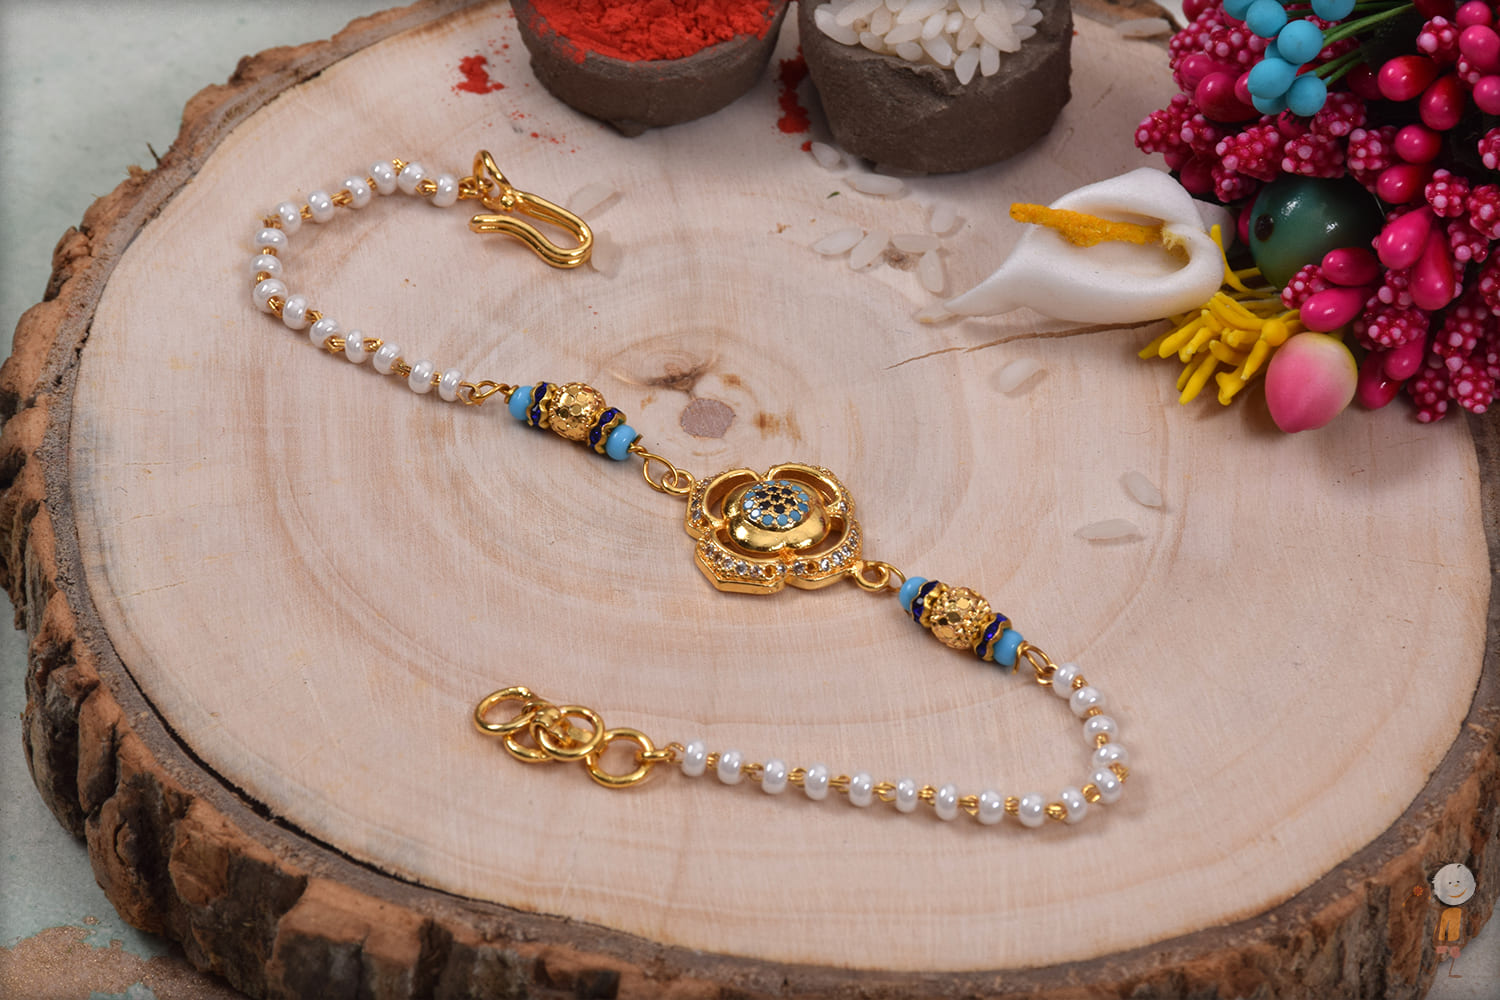 Buy Rakhi for Bhaiya and Bhabhi Handmade Bracelet, Adjustable Rakhi Bracelet,  Rakhi Festival Bracelets With Earrings, Rakhi Hamper Gift Online in India -  Etsy | Handmade bracelets, Rakhi festival, Festival bracelets